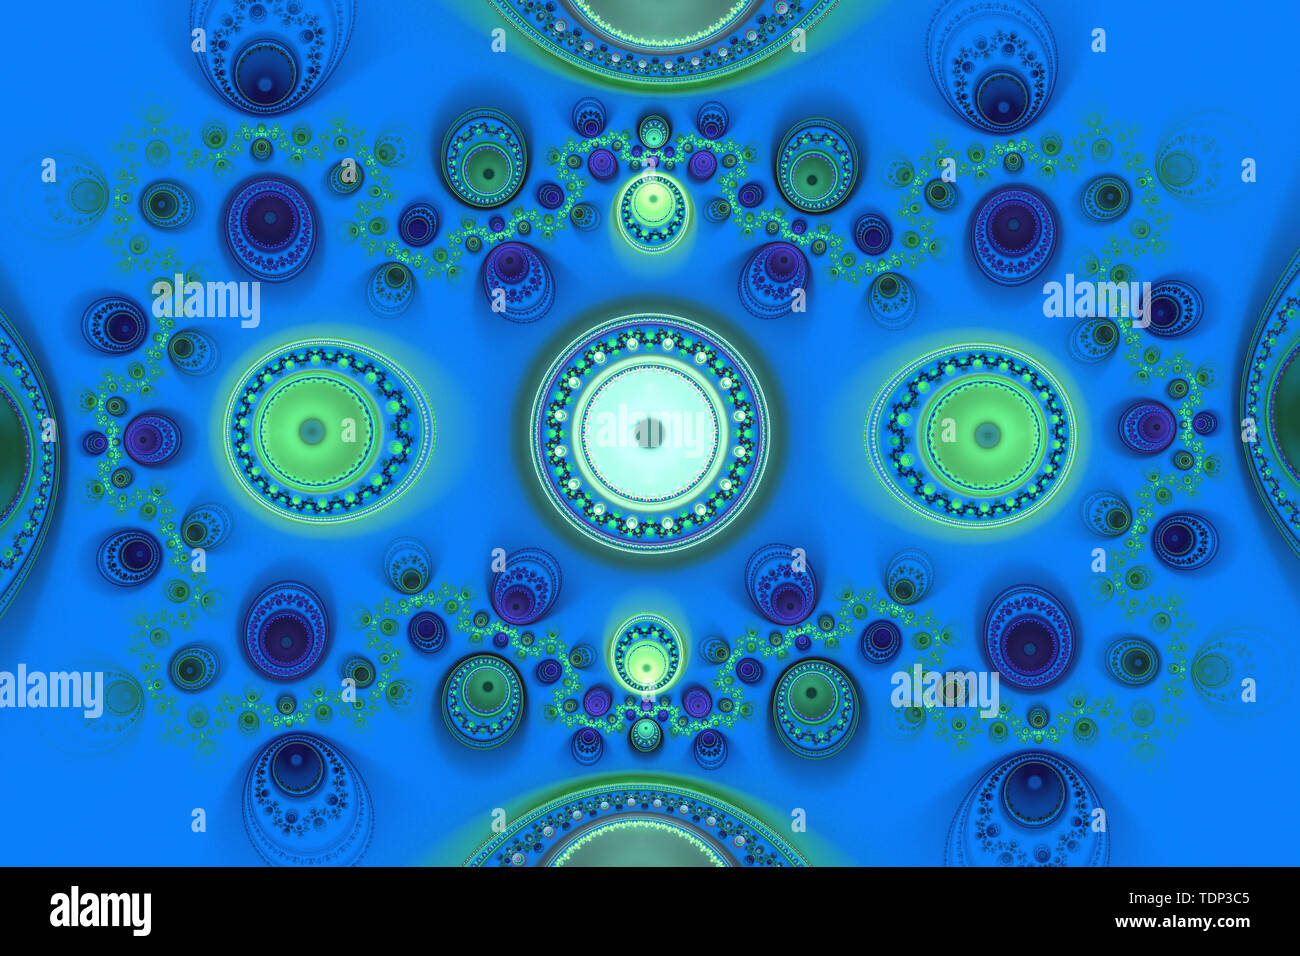 Illustration de fond bleu fractale des formes géométriques magick de couverture de livre musique rêverie explosion flyer ou autre concept. Banque D'Images